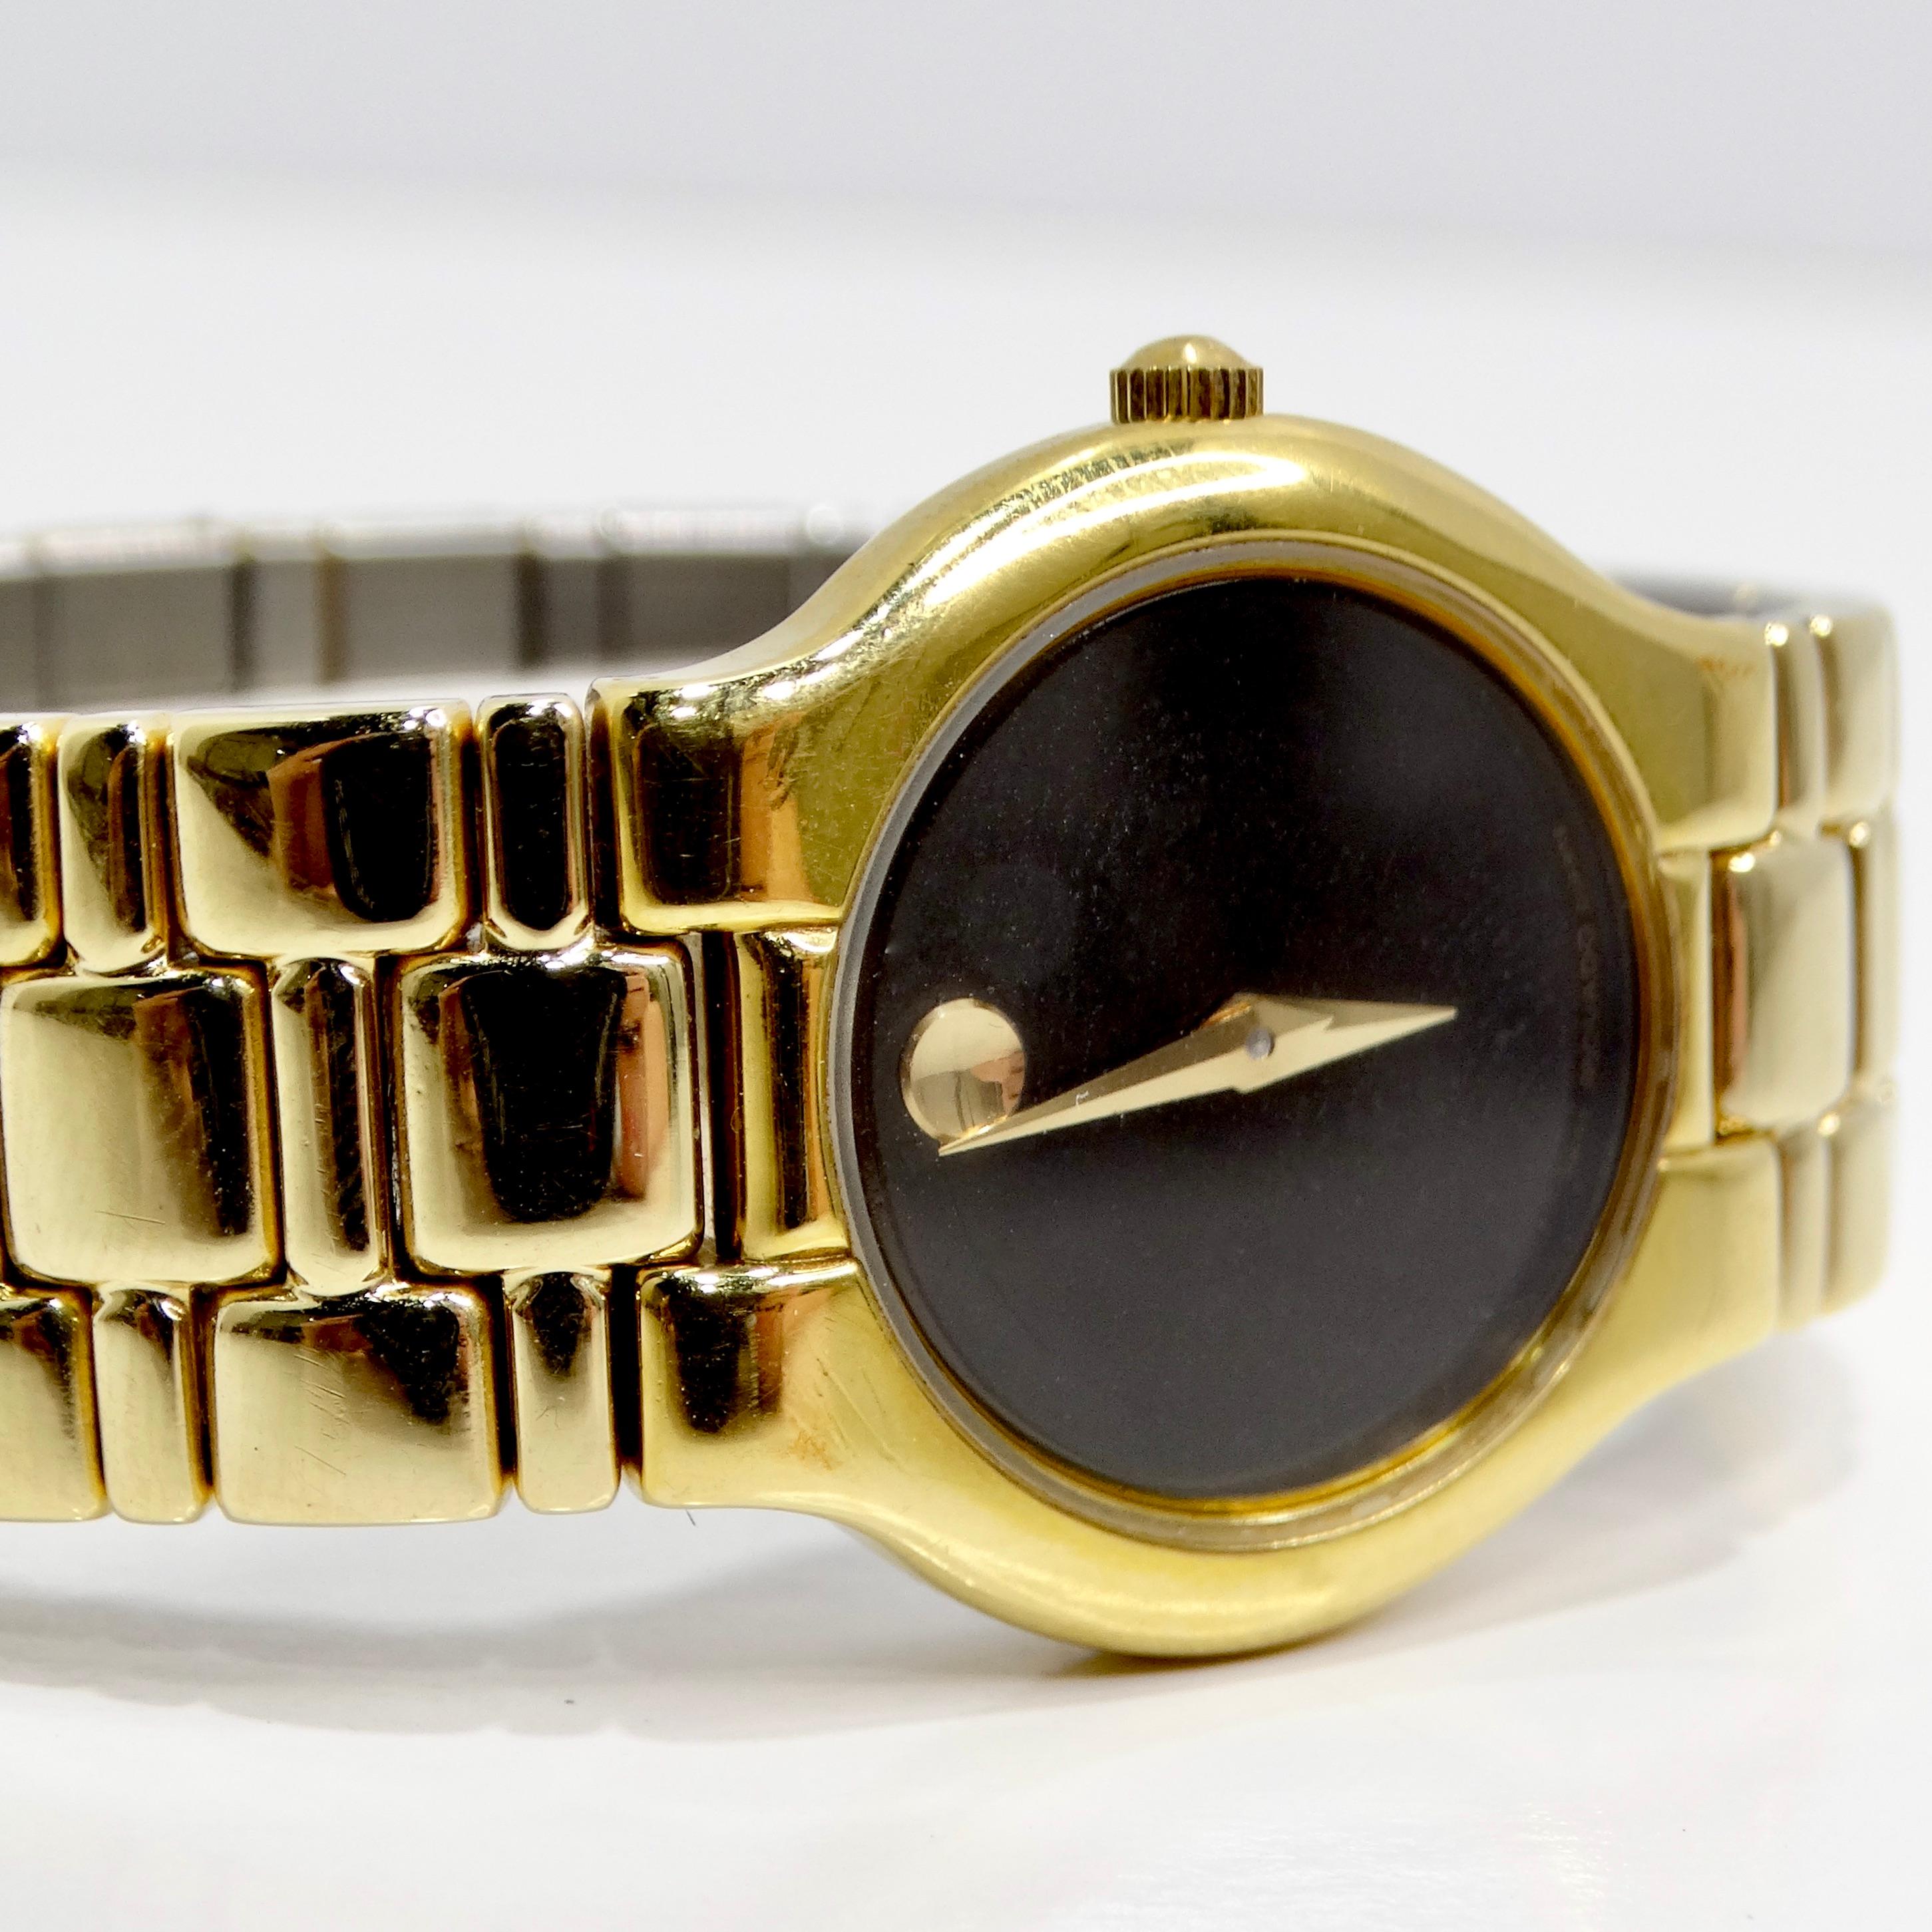 Voici la montre Movado plaquée or 18 carats, une montre-bracelet classique, intemporelle et élégante, qui allie luxe et style raffiné. Ce garde-temps exquis est doté d'un boîtier en acier inoxydable plaqué d'or jaune 18 carats, offrant un look